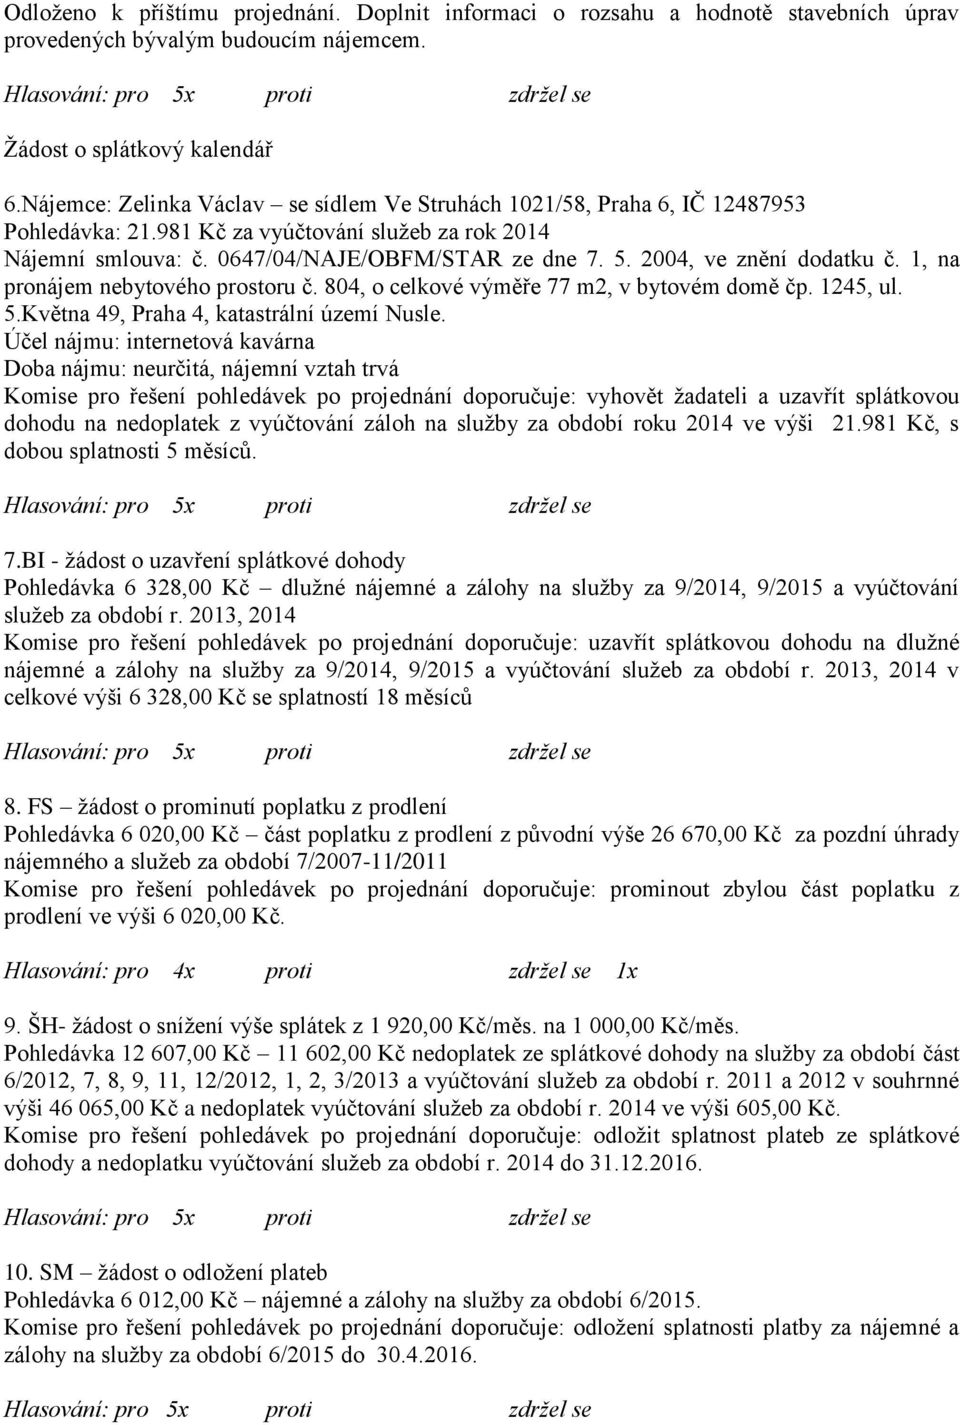 2004, ve znění dodatku č. 1, na pronájem nebytového prostoru č. 804, o celkové výměře 77 m2, v bytovém domě čp. 1245, ul. 5.Května 49, Praha 4, katastrální území Nusle.